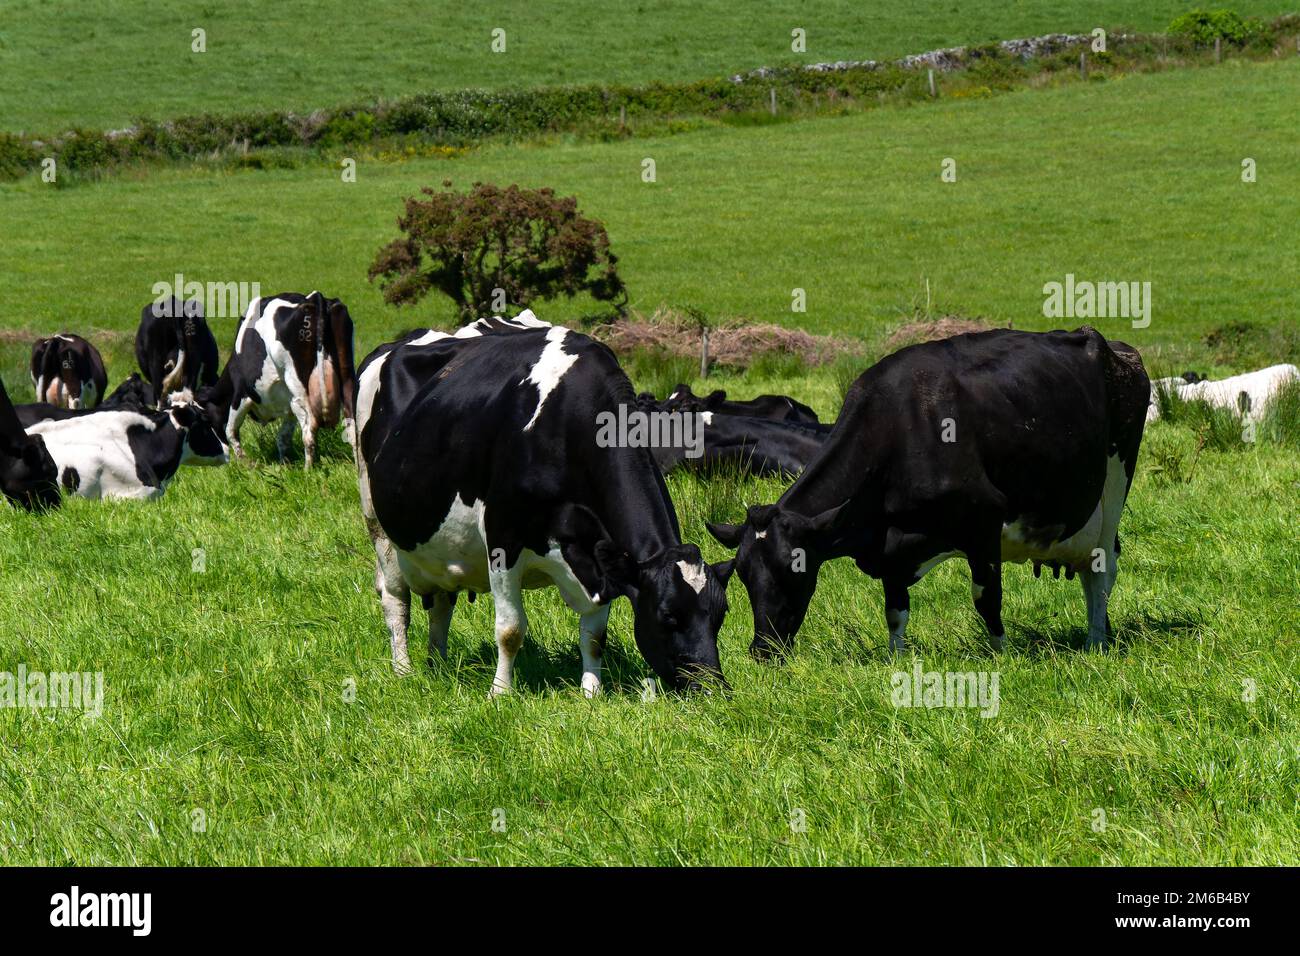 Plusieurs vaches mangent de l'herbe. Bétail sur une ferme d'élevage. Paysage agricole. Ferme biologique. Vache noire et blanche sur gazon vert Banque D'Images